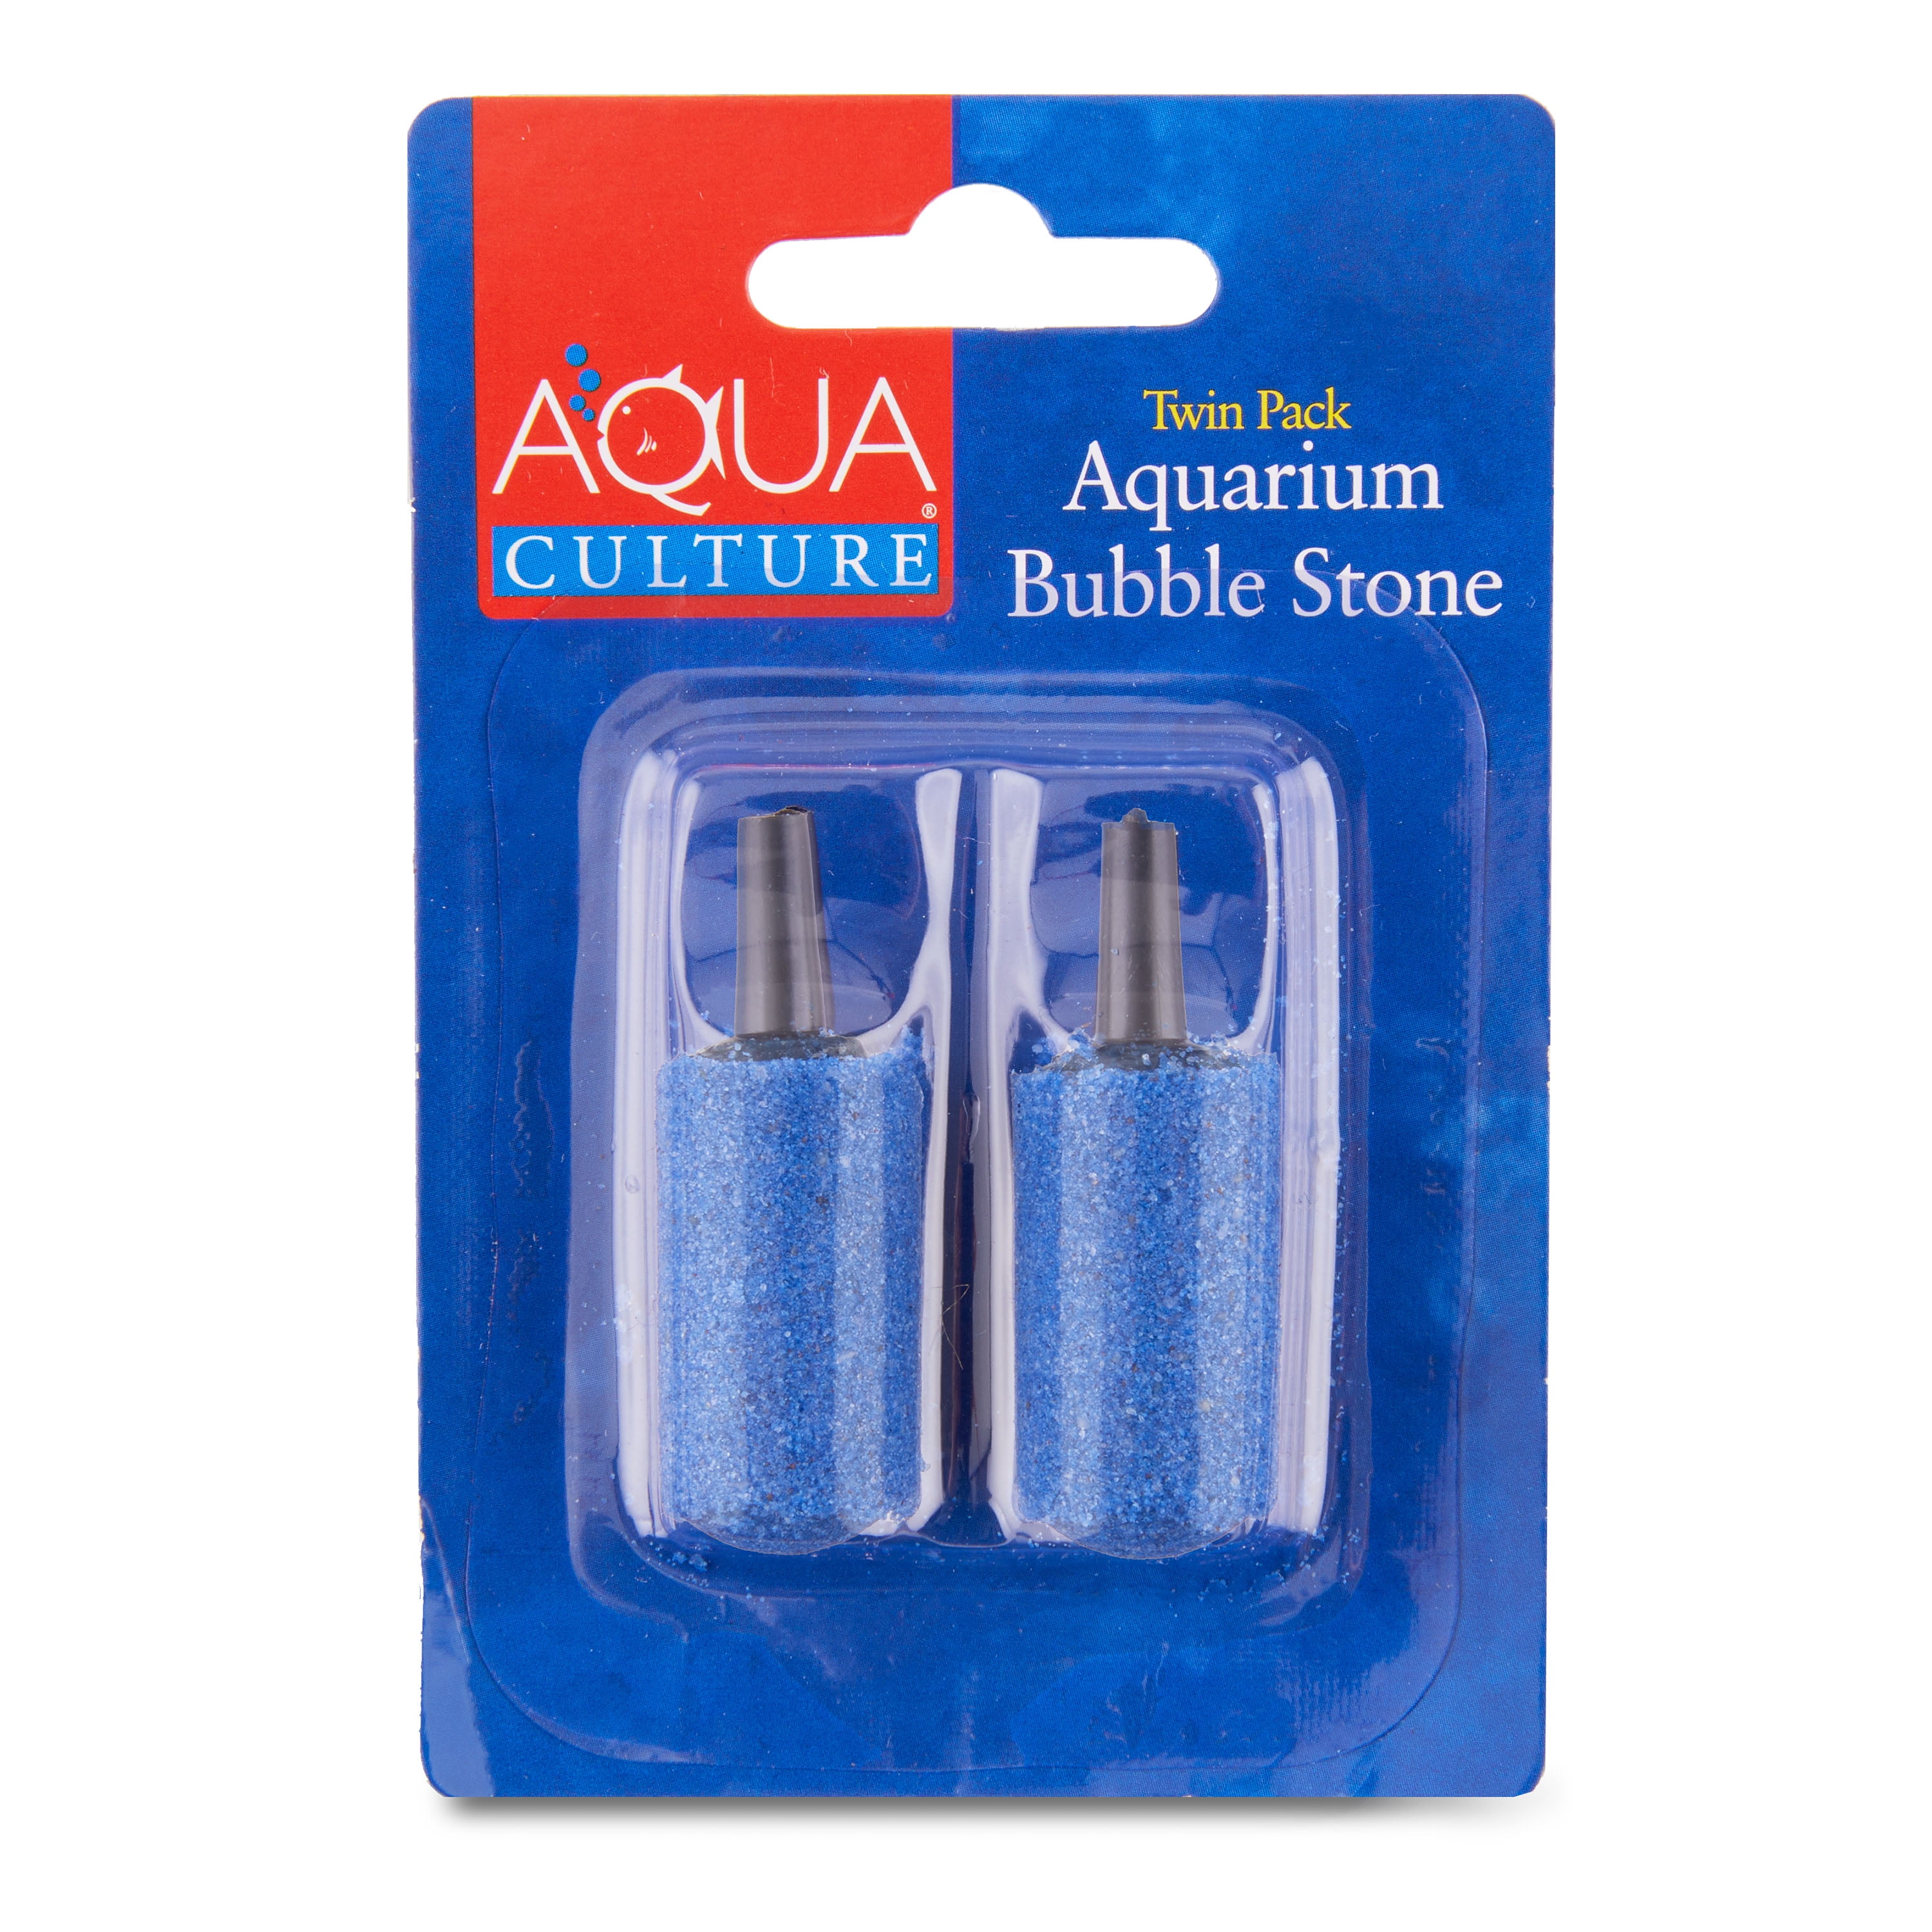 Aqua Culture Aquarium Bubble Stone, Twin Pack